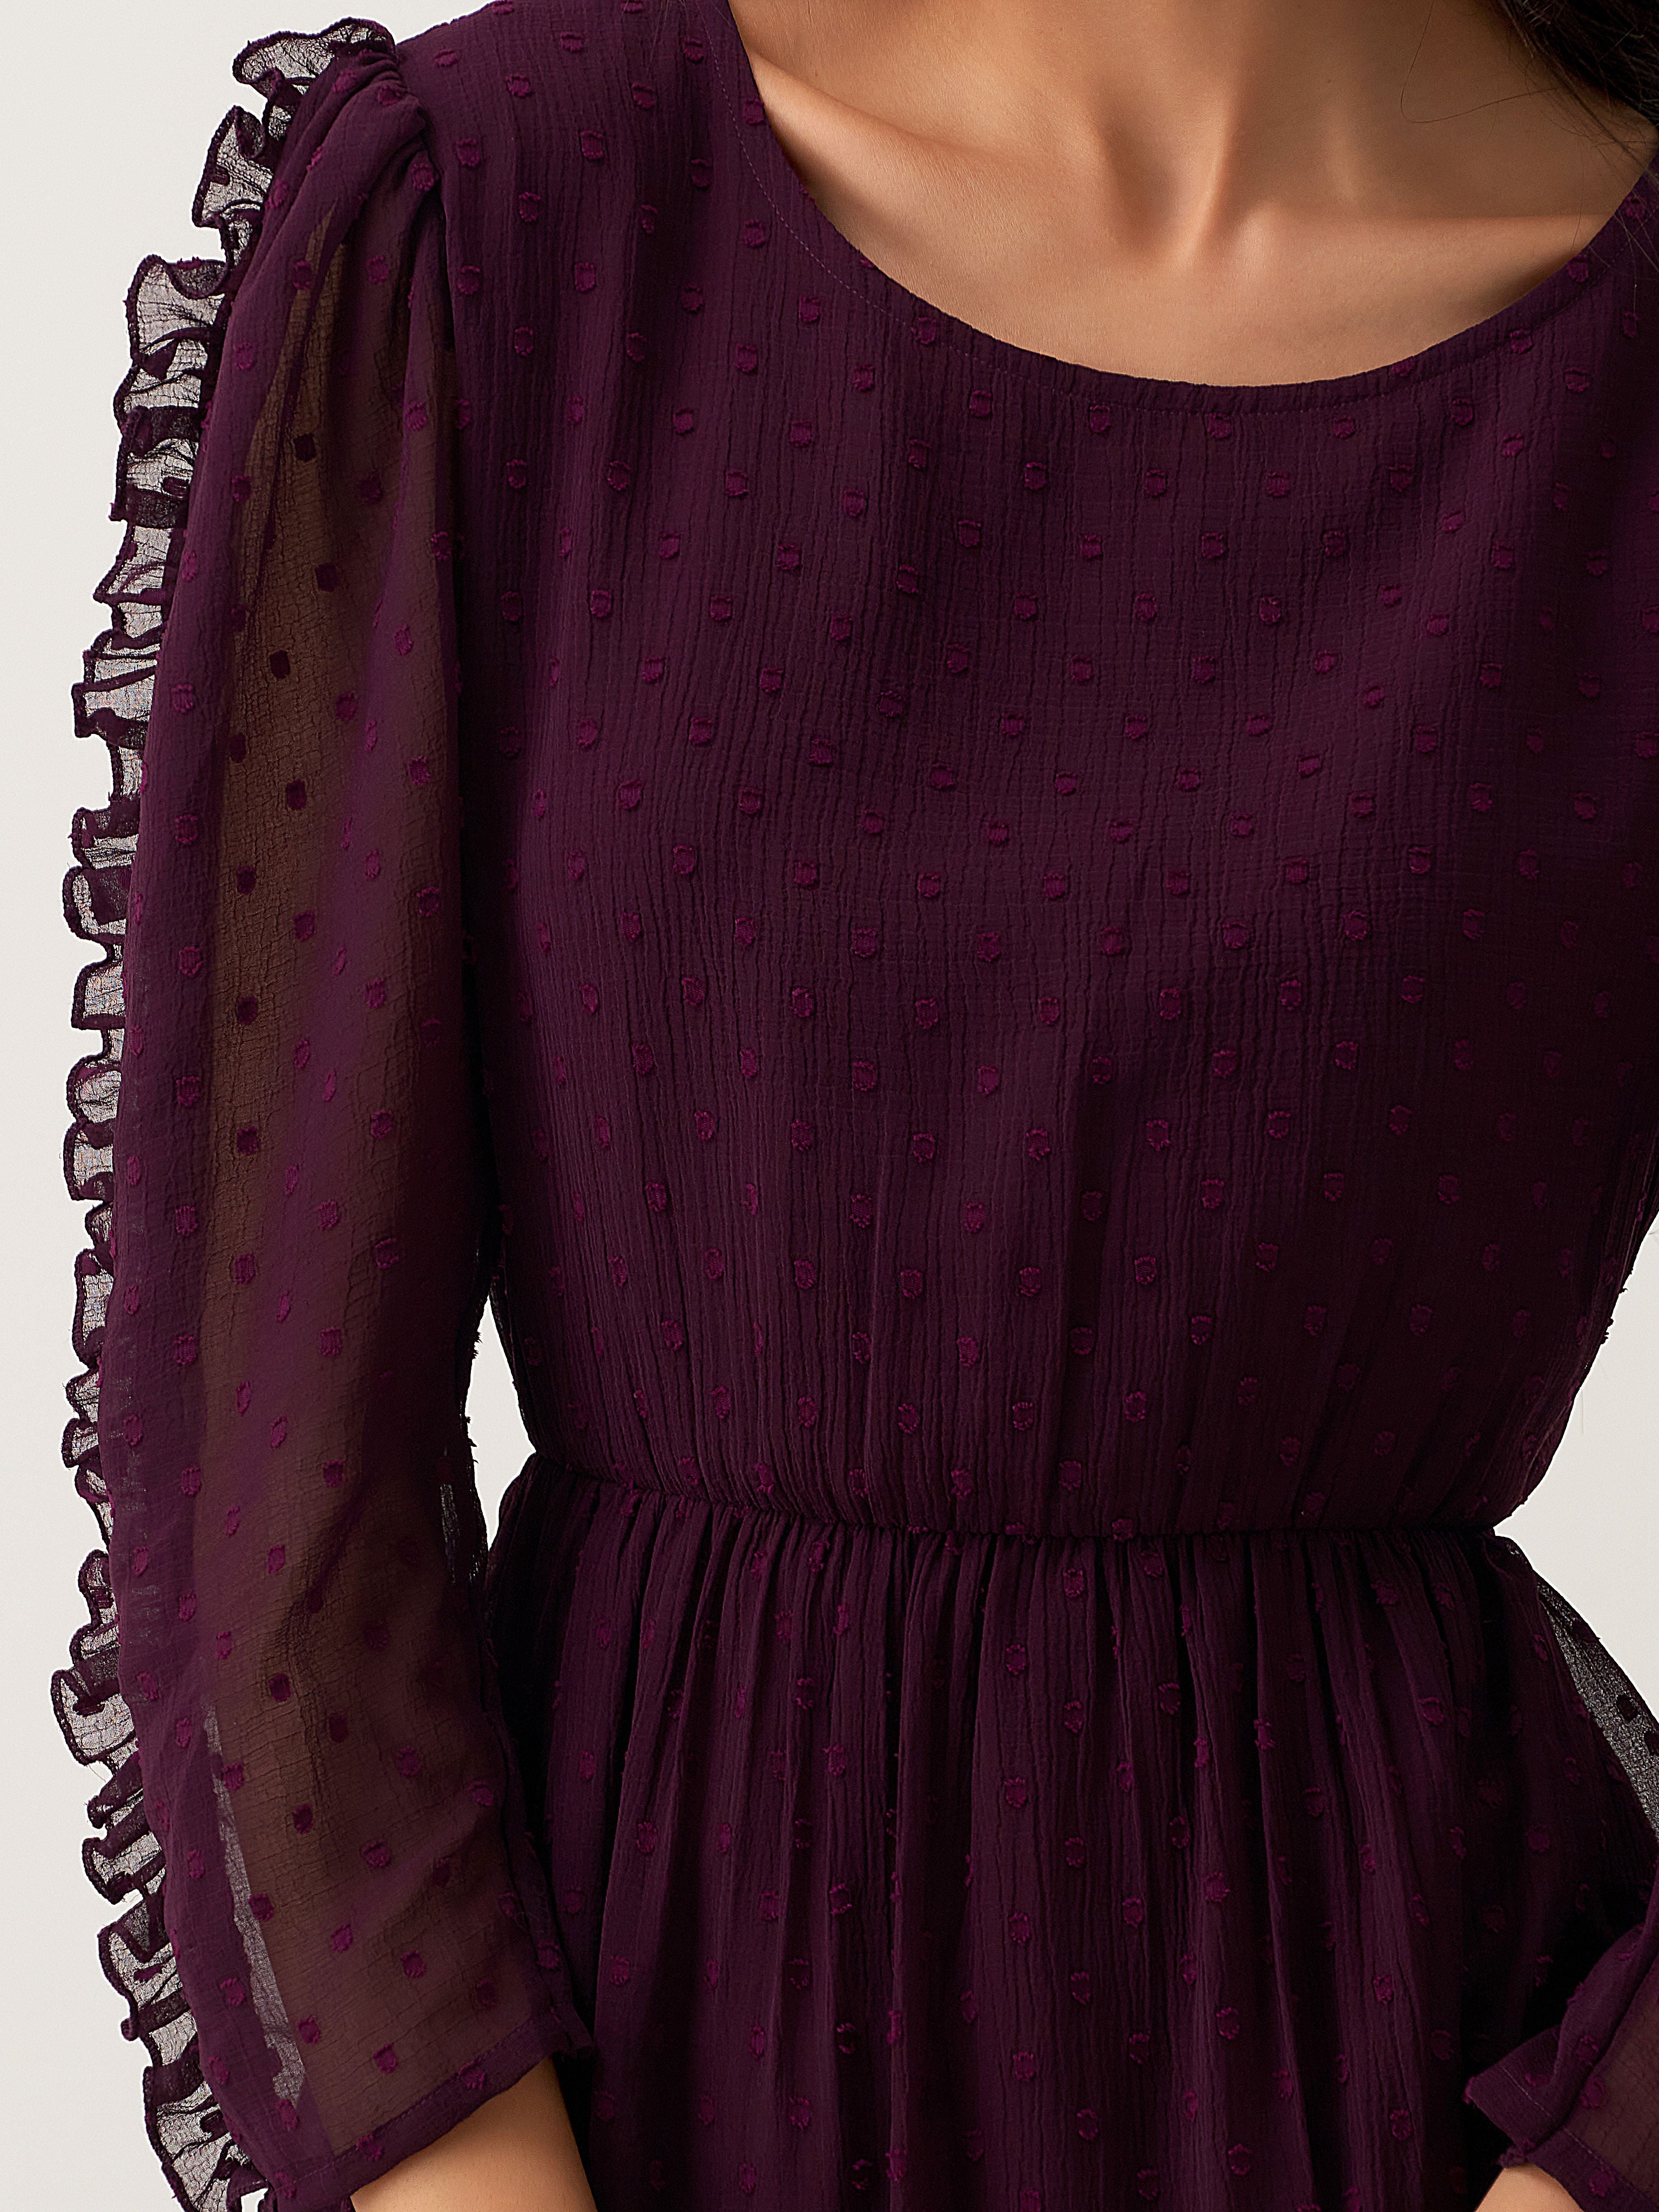 Purple Chiffon Brasso Swiss Dot Round Neck Dress